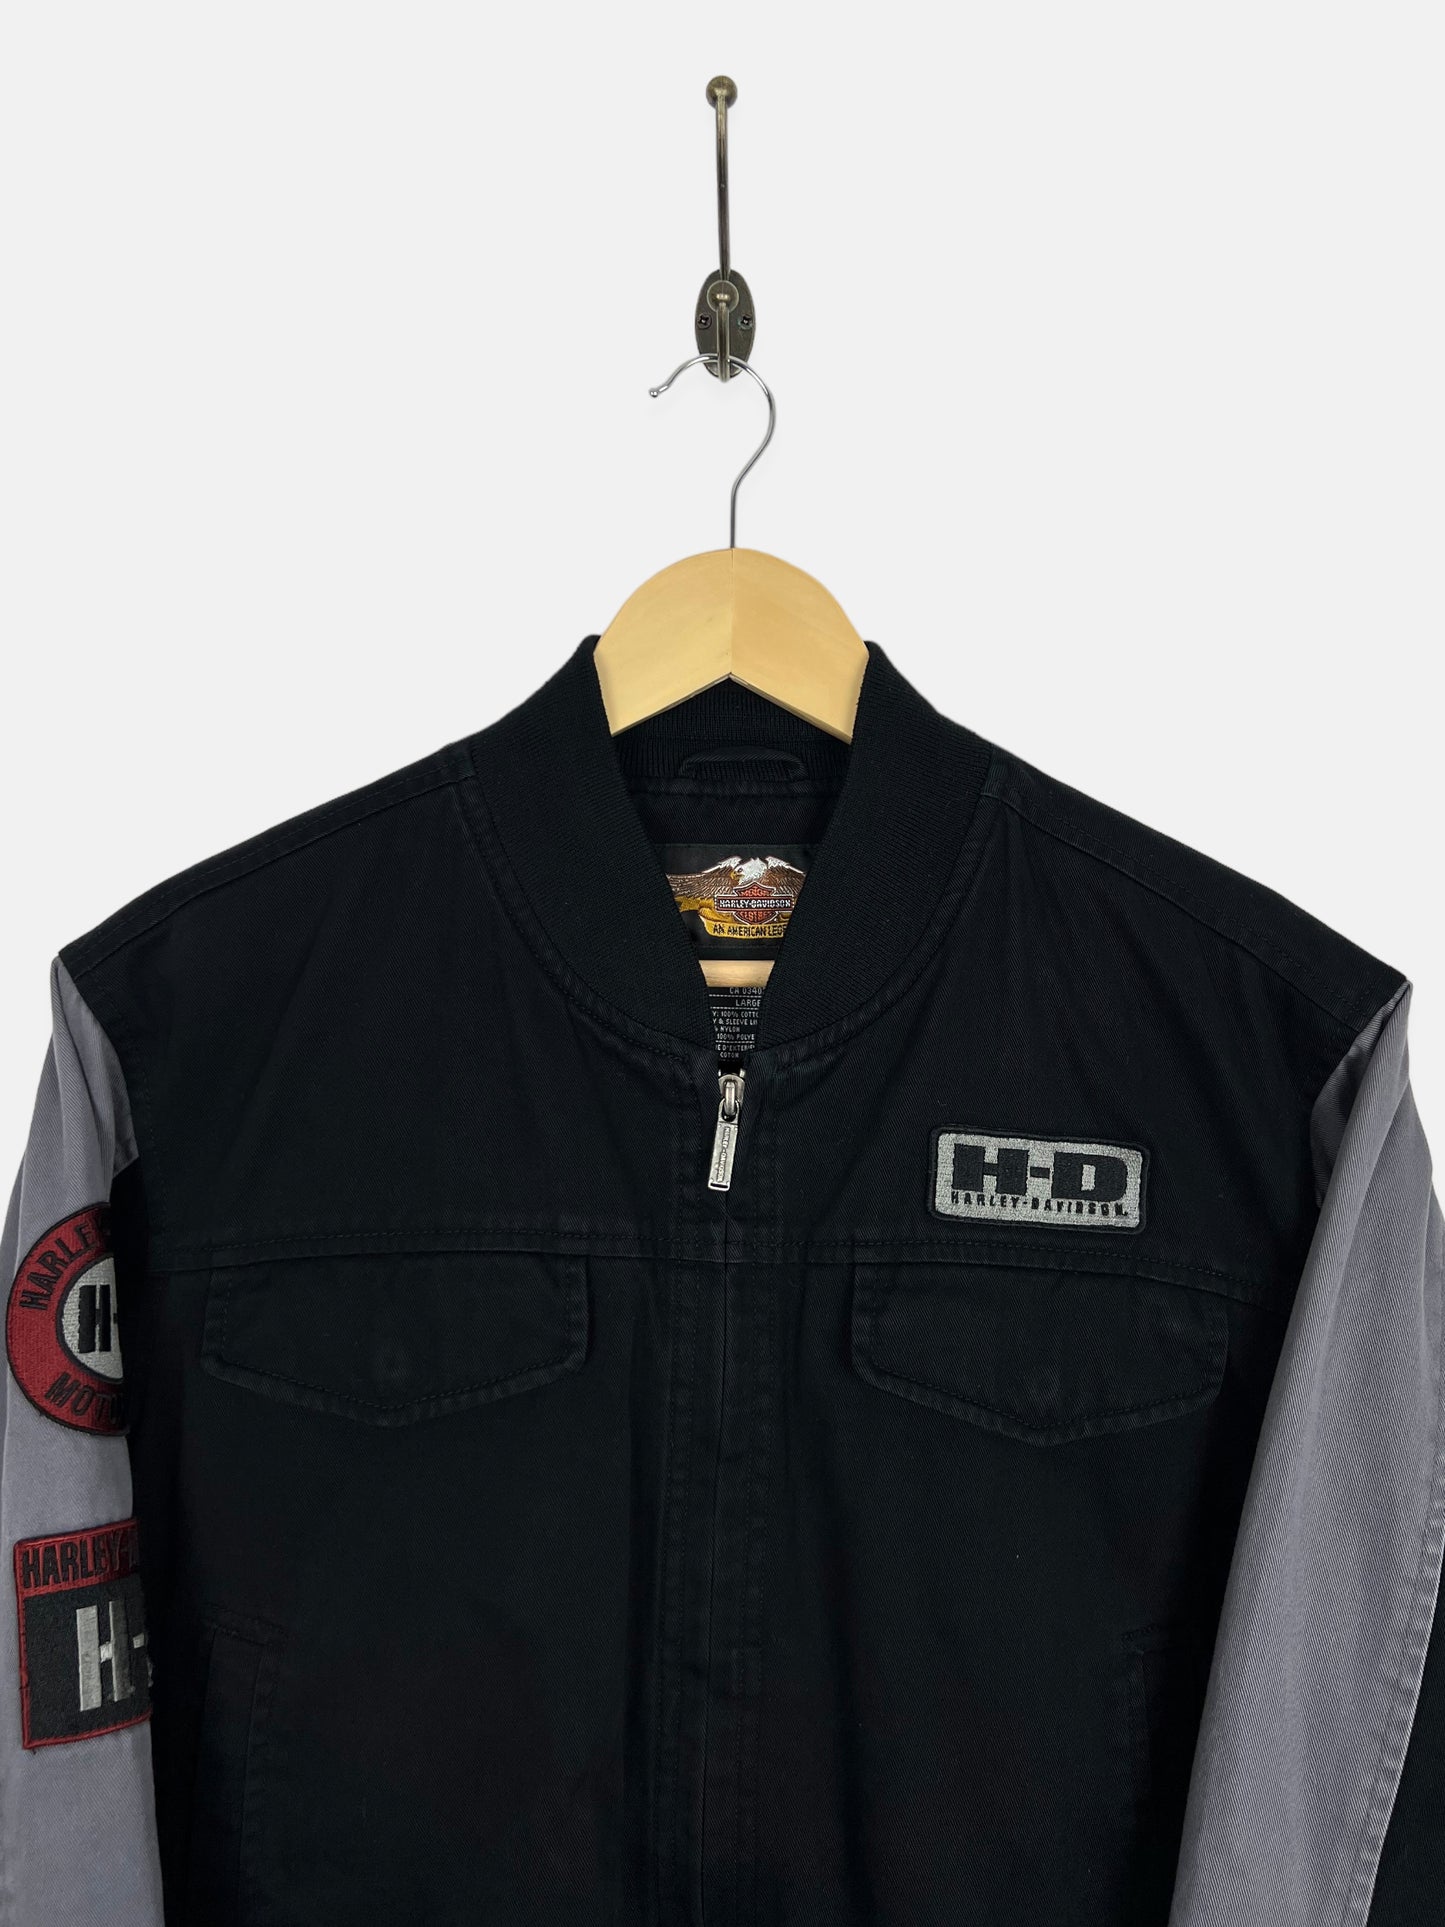 90's Harley Davidson Embroidered Jacket Size 10